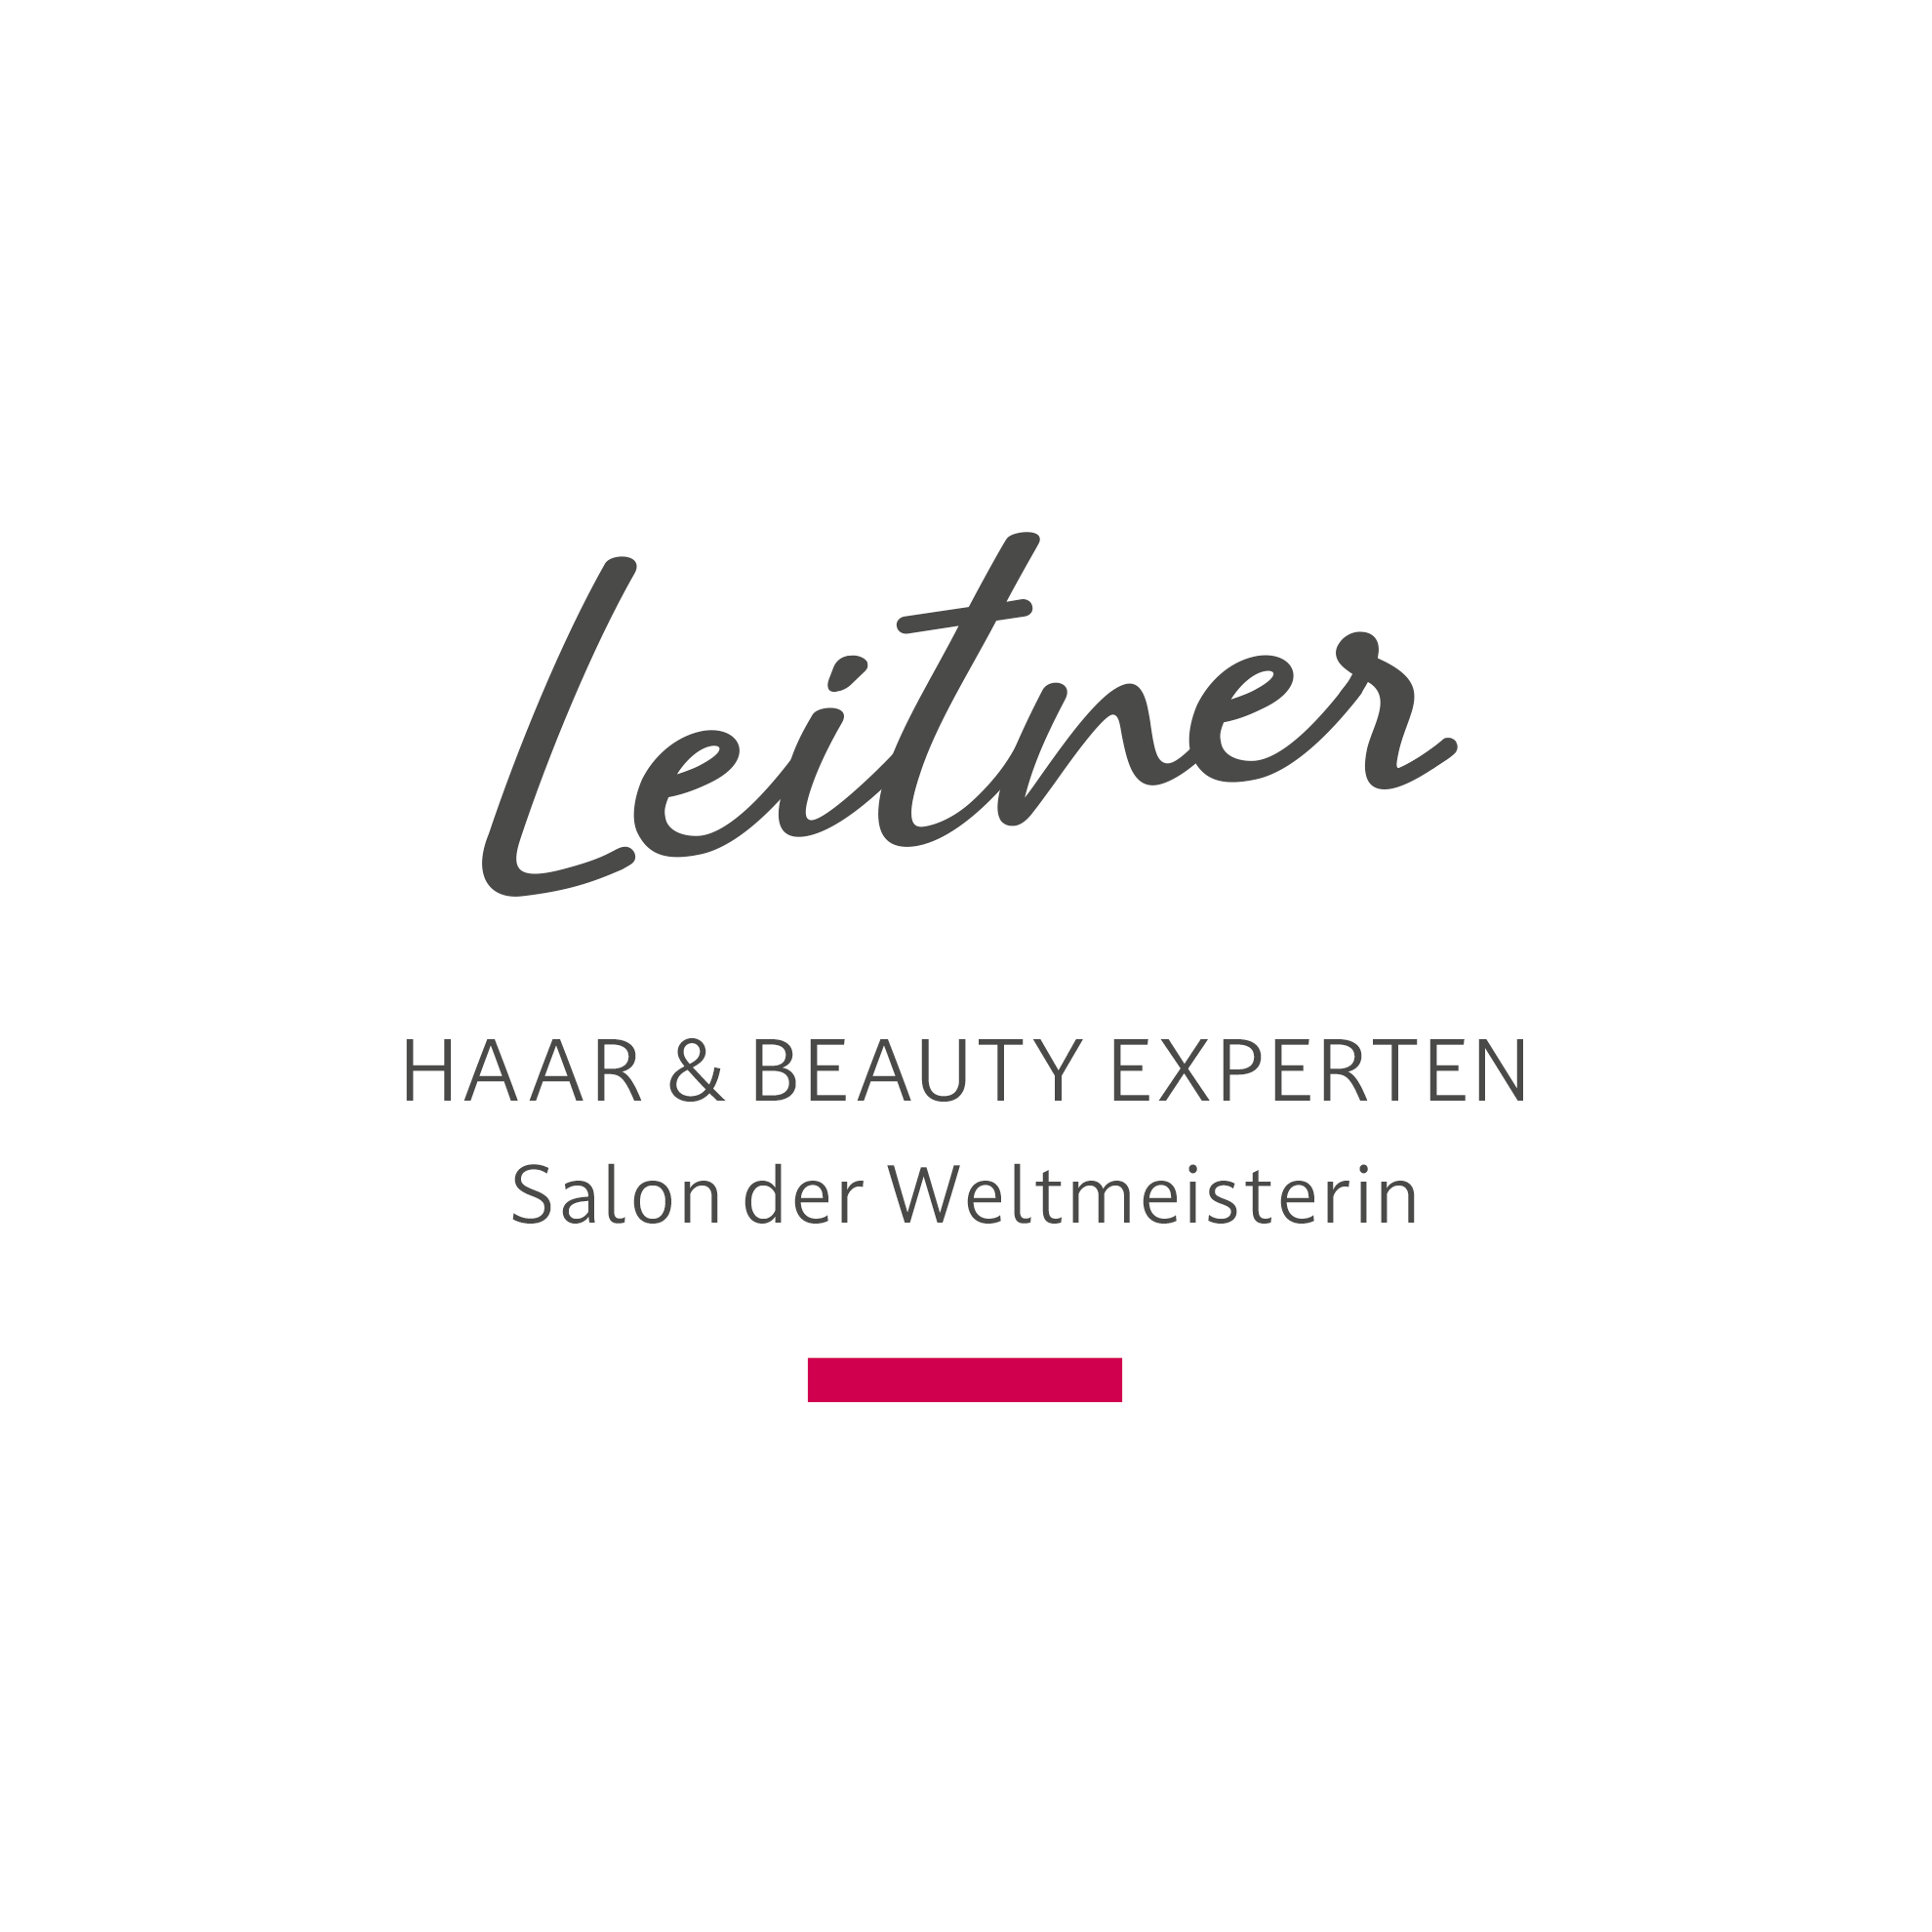 Leitner - Haar & Beauty Experten, Salon der Weltmeisterin in Haid. Werbefreundin - ihre Werbeagentur, Webagentur, Grafik und Design und Werbung in Linz Leonding.